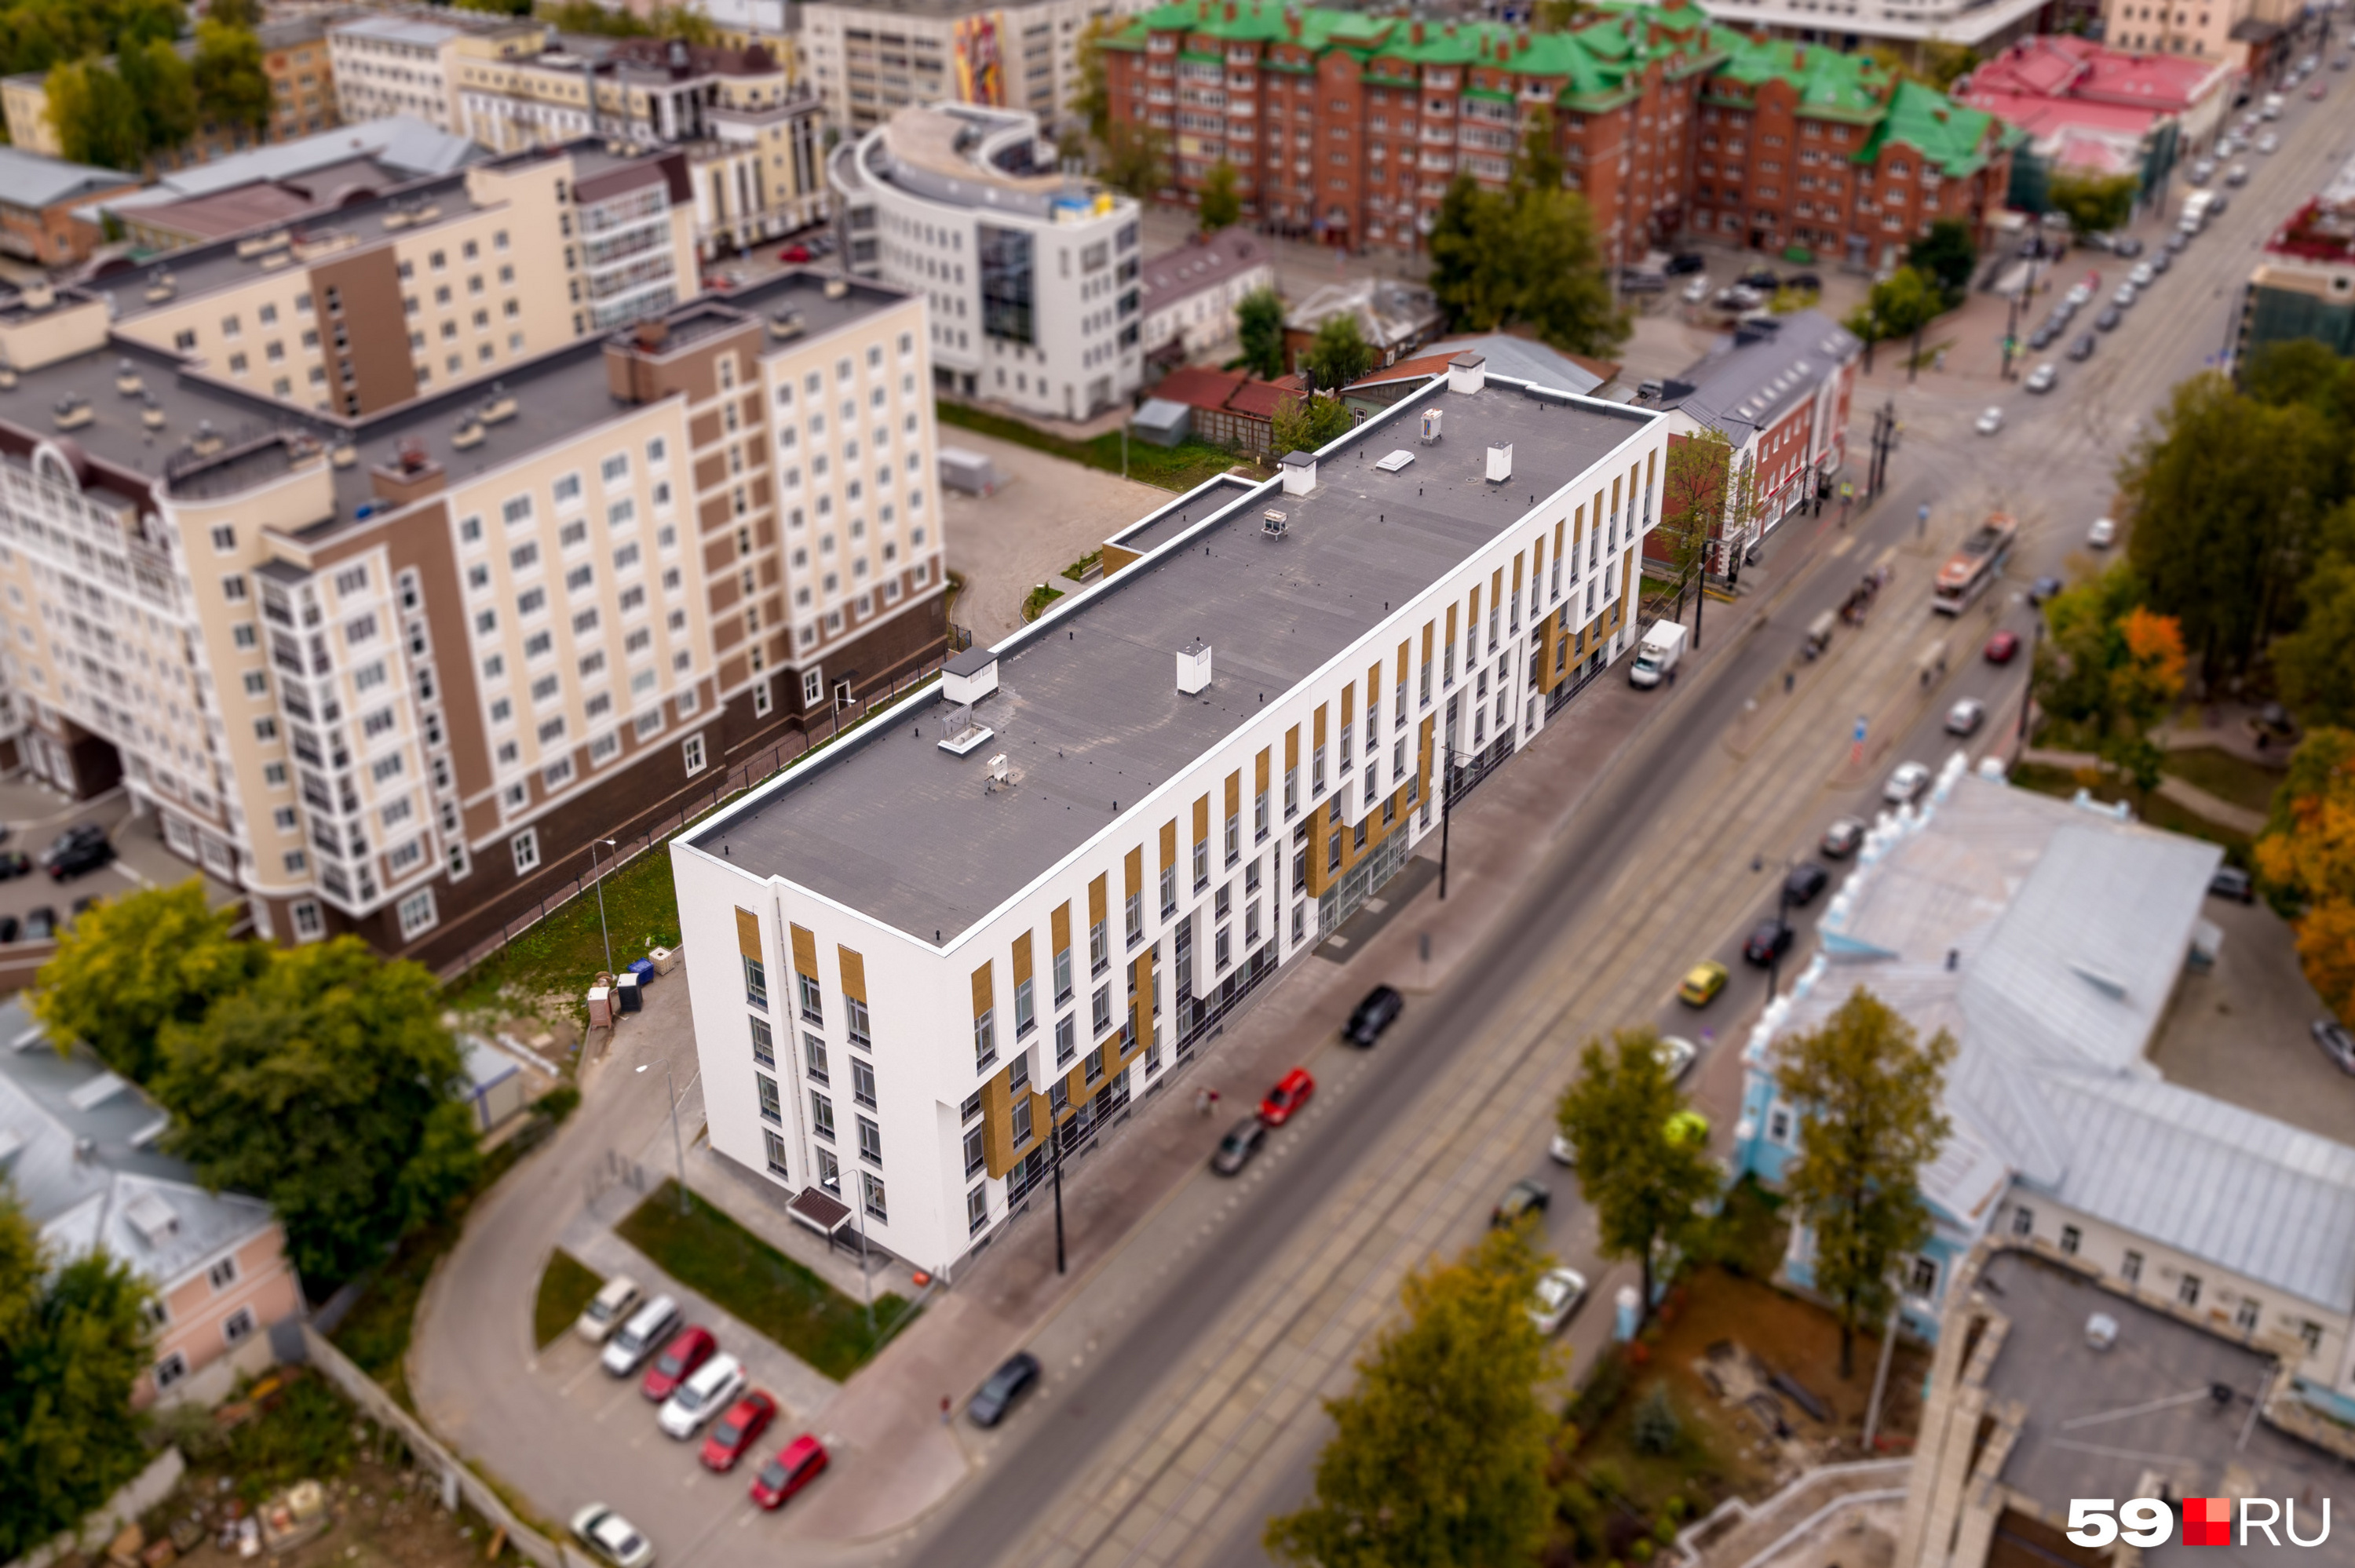 Новую поликлинику построили на Разгуляе — в нескольких кварталах от старого здания на Пермской